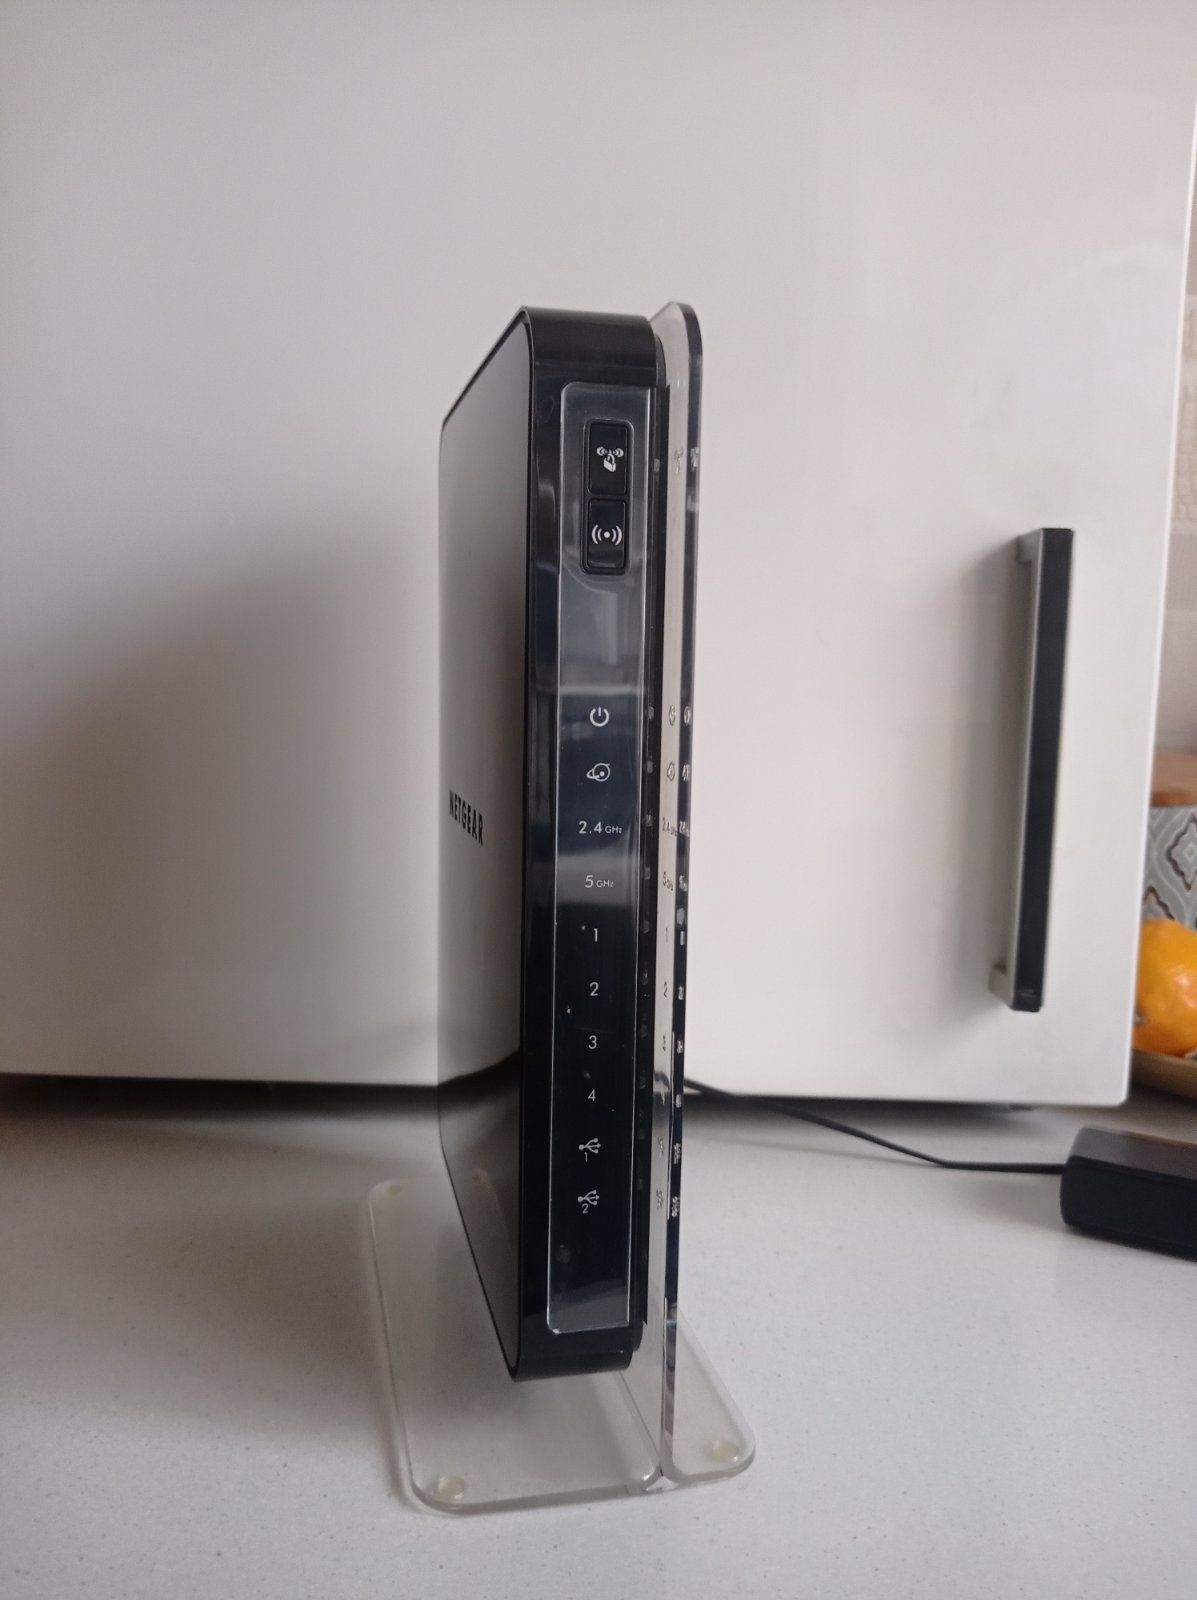 Роутер Netgear WNDR4500 N900 под ремонт или на запчасти